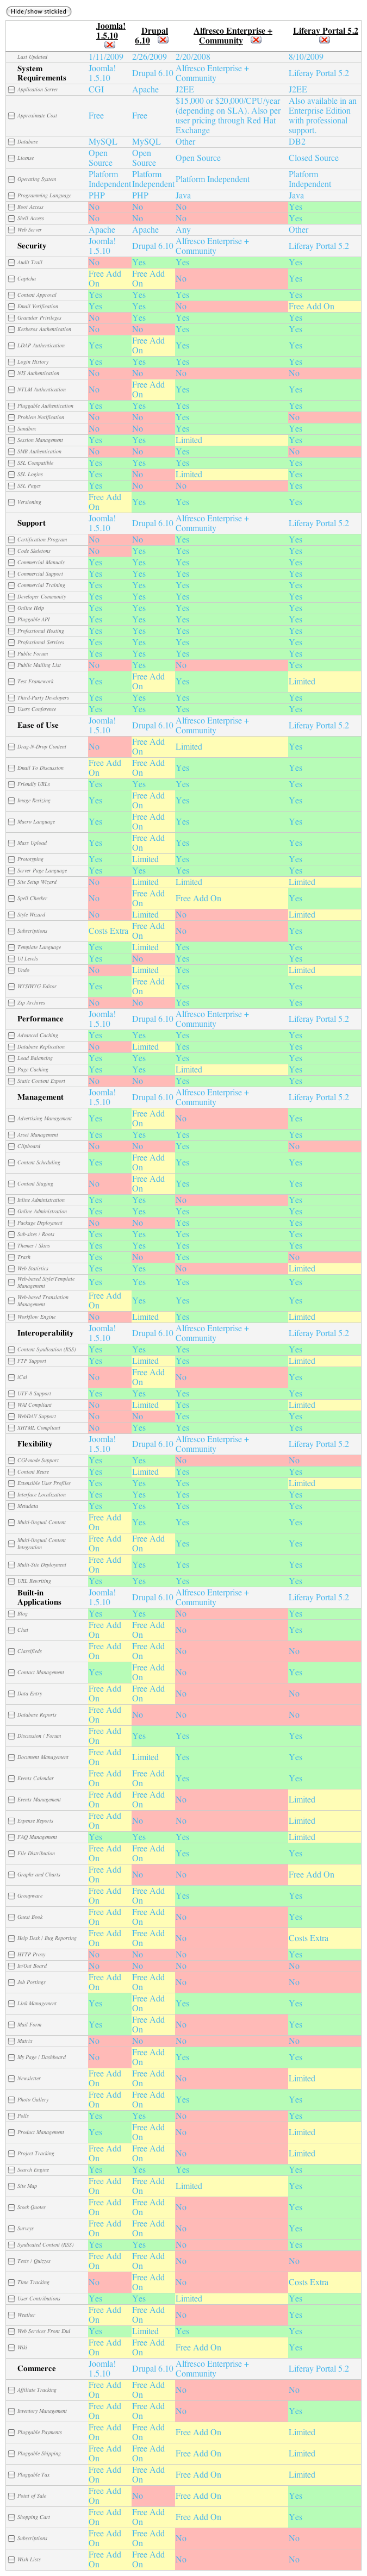 Matriz comparativa de CMS: Drupal, Joomla, Liferay y Alfresco